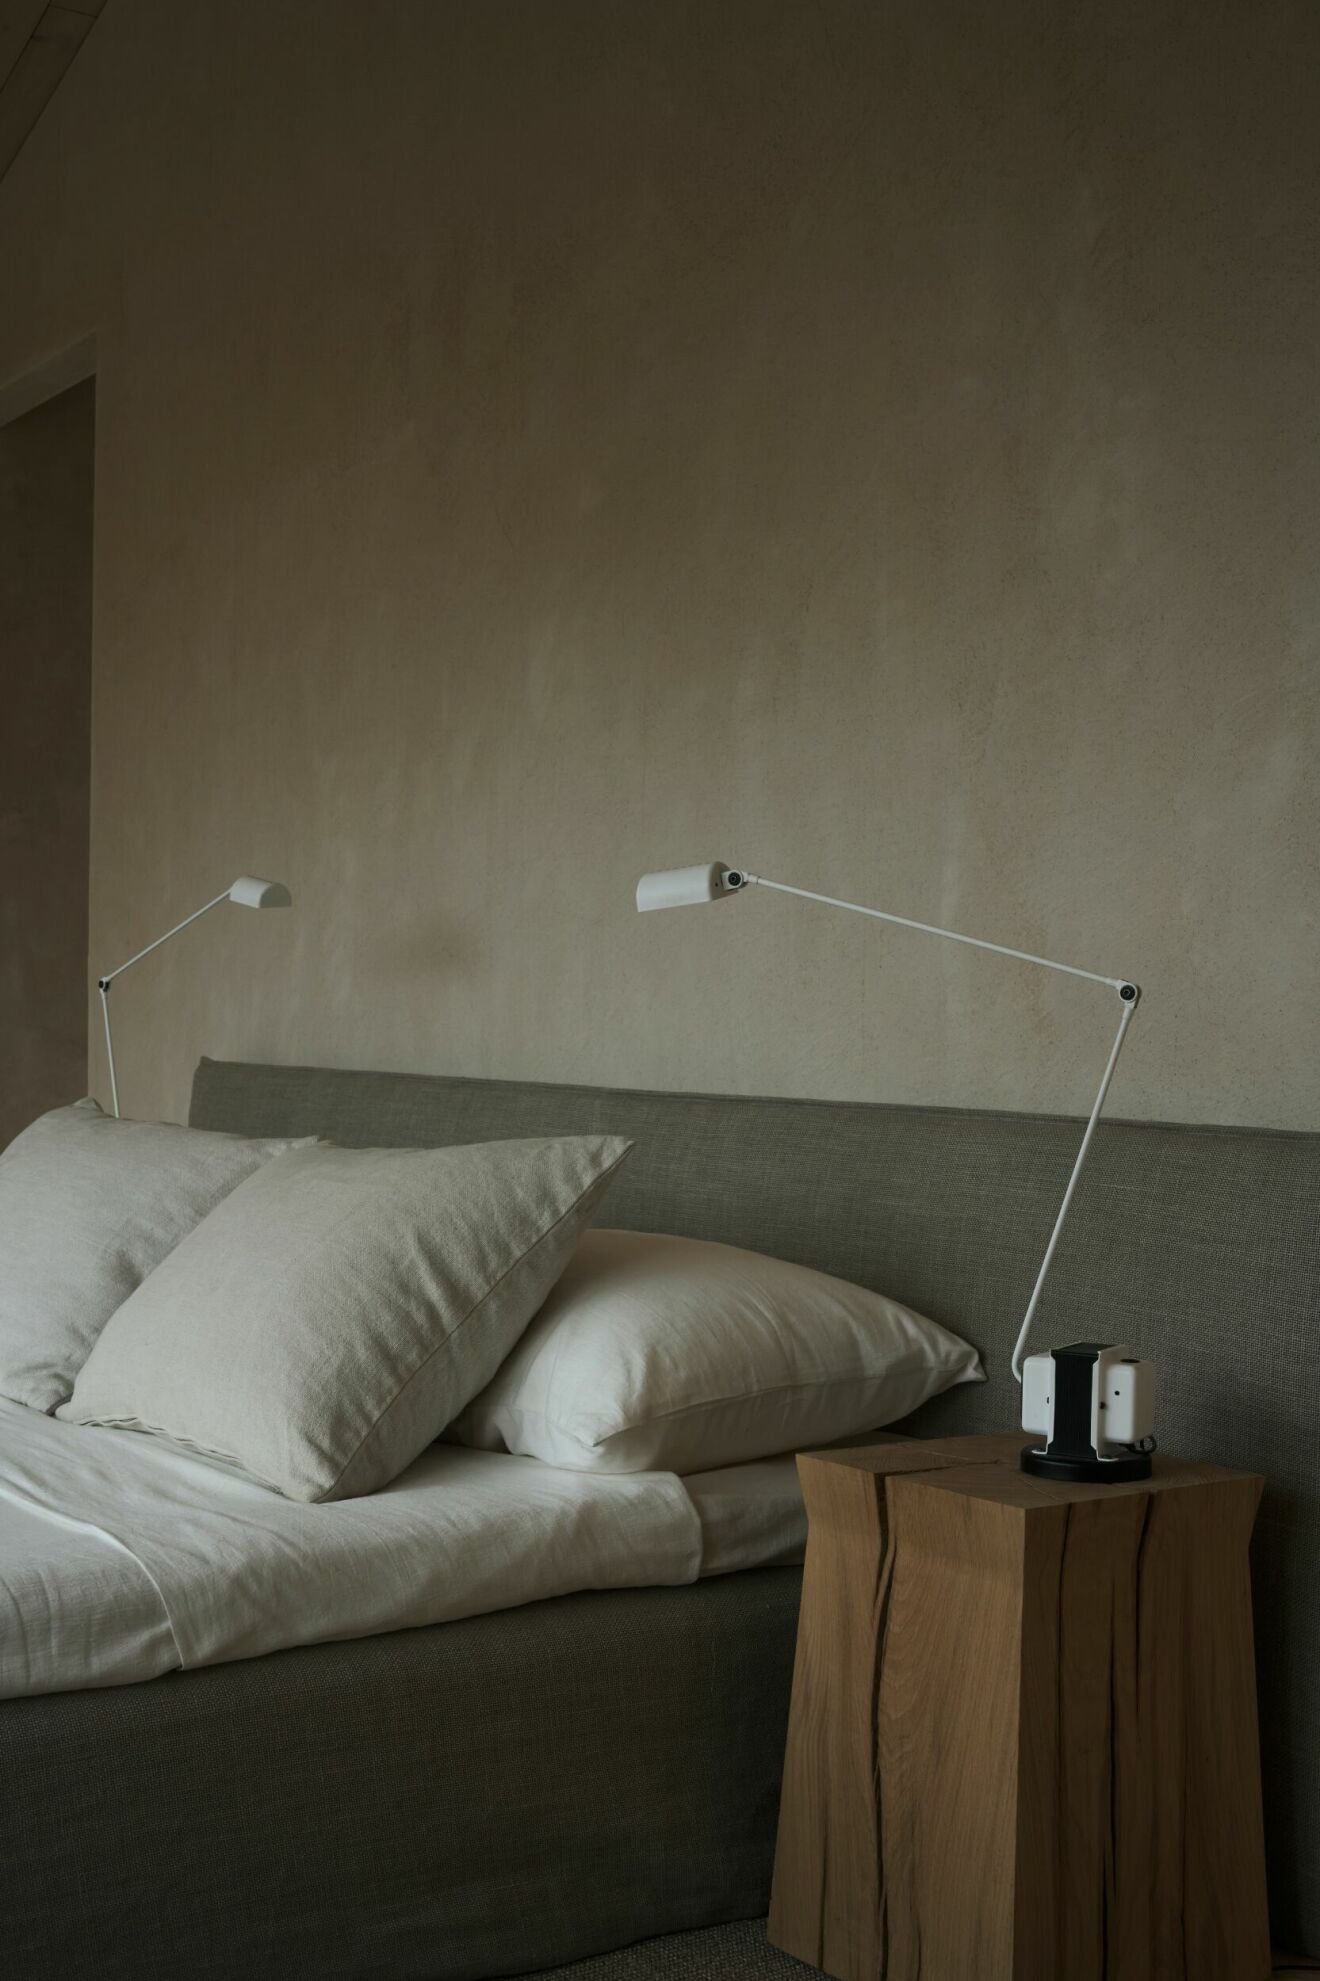 Sovrum med sänggavel Simplicité, design Pella Hedeby för Sérénité, träpallar från Noorstad och lampor Daphine från Lumina.